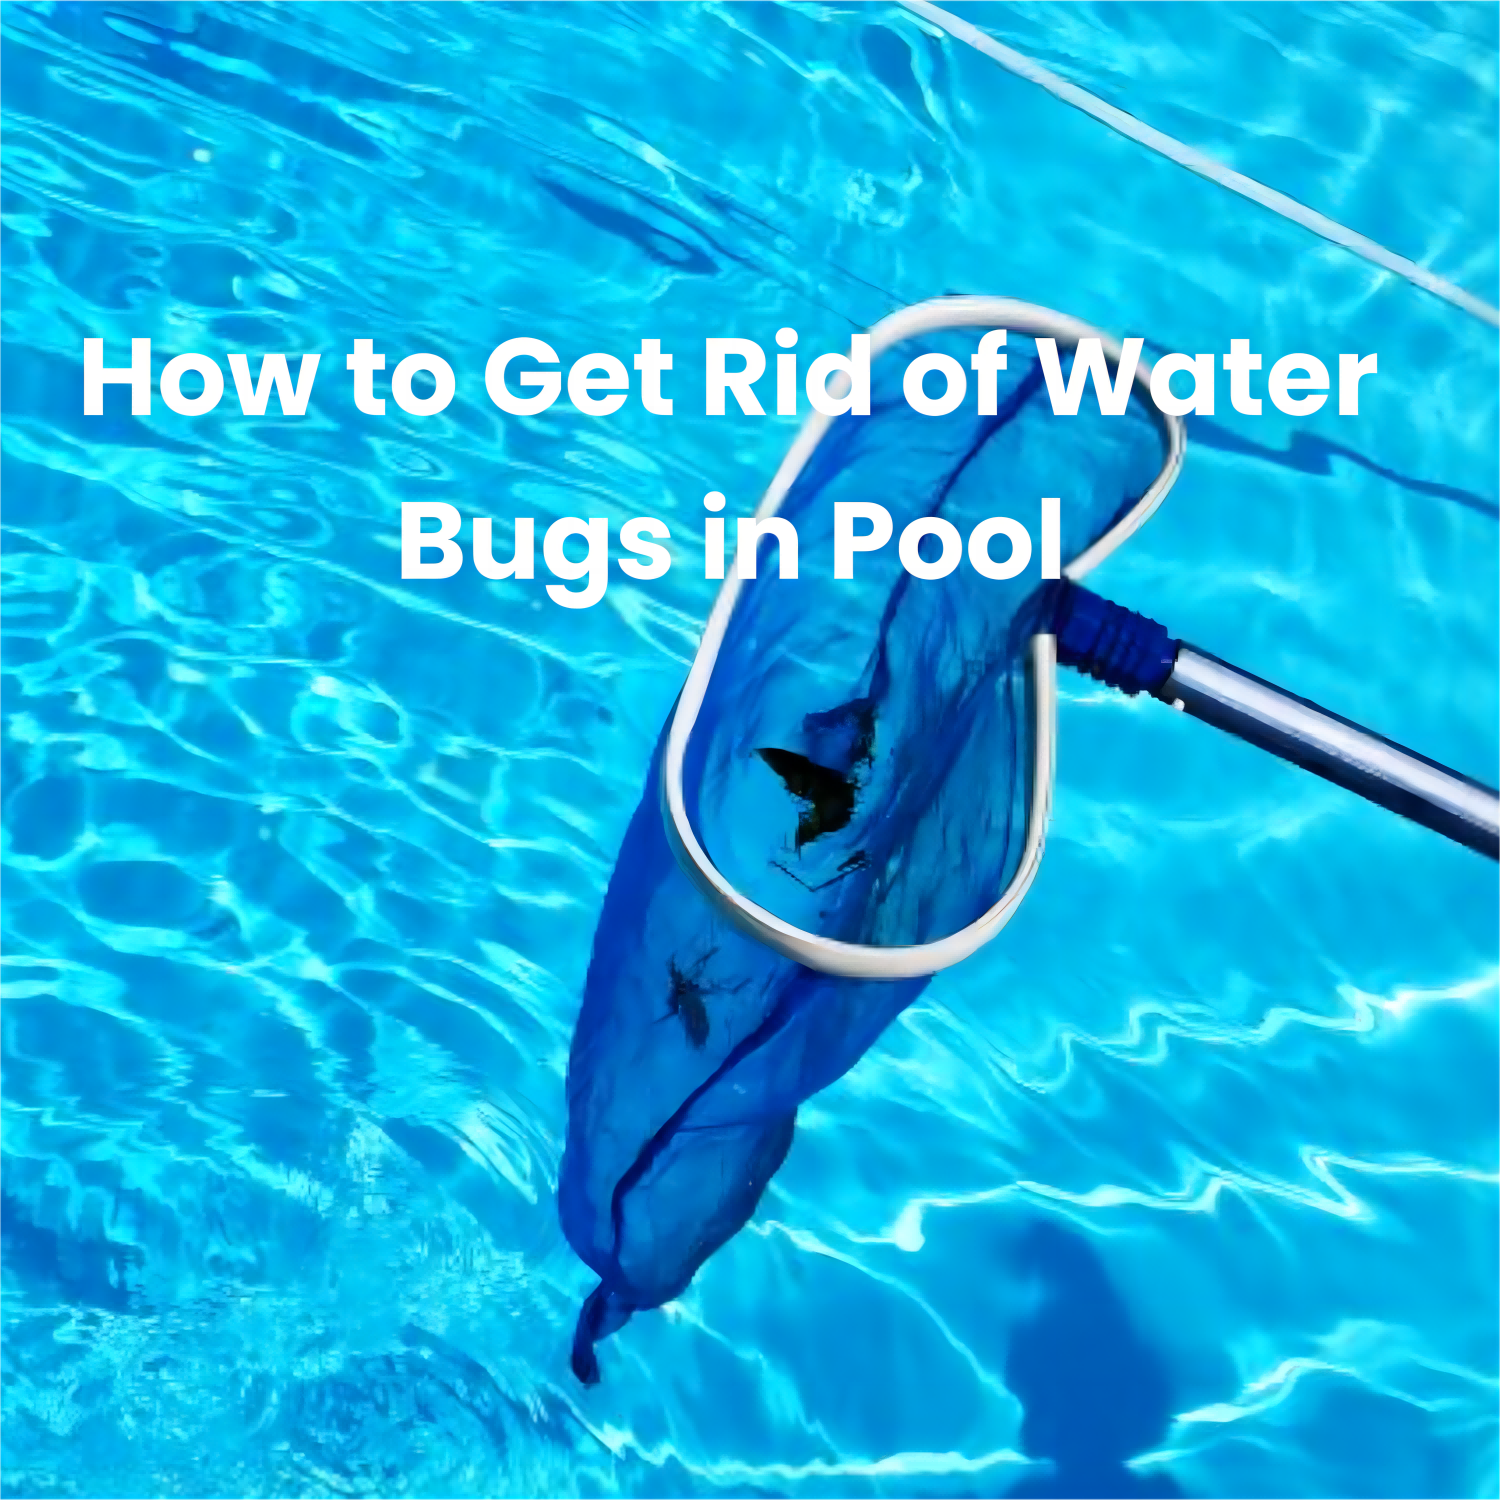 Get Rid of Pool Water Bugs